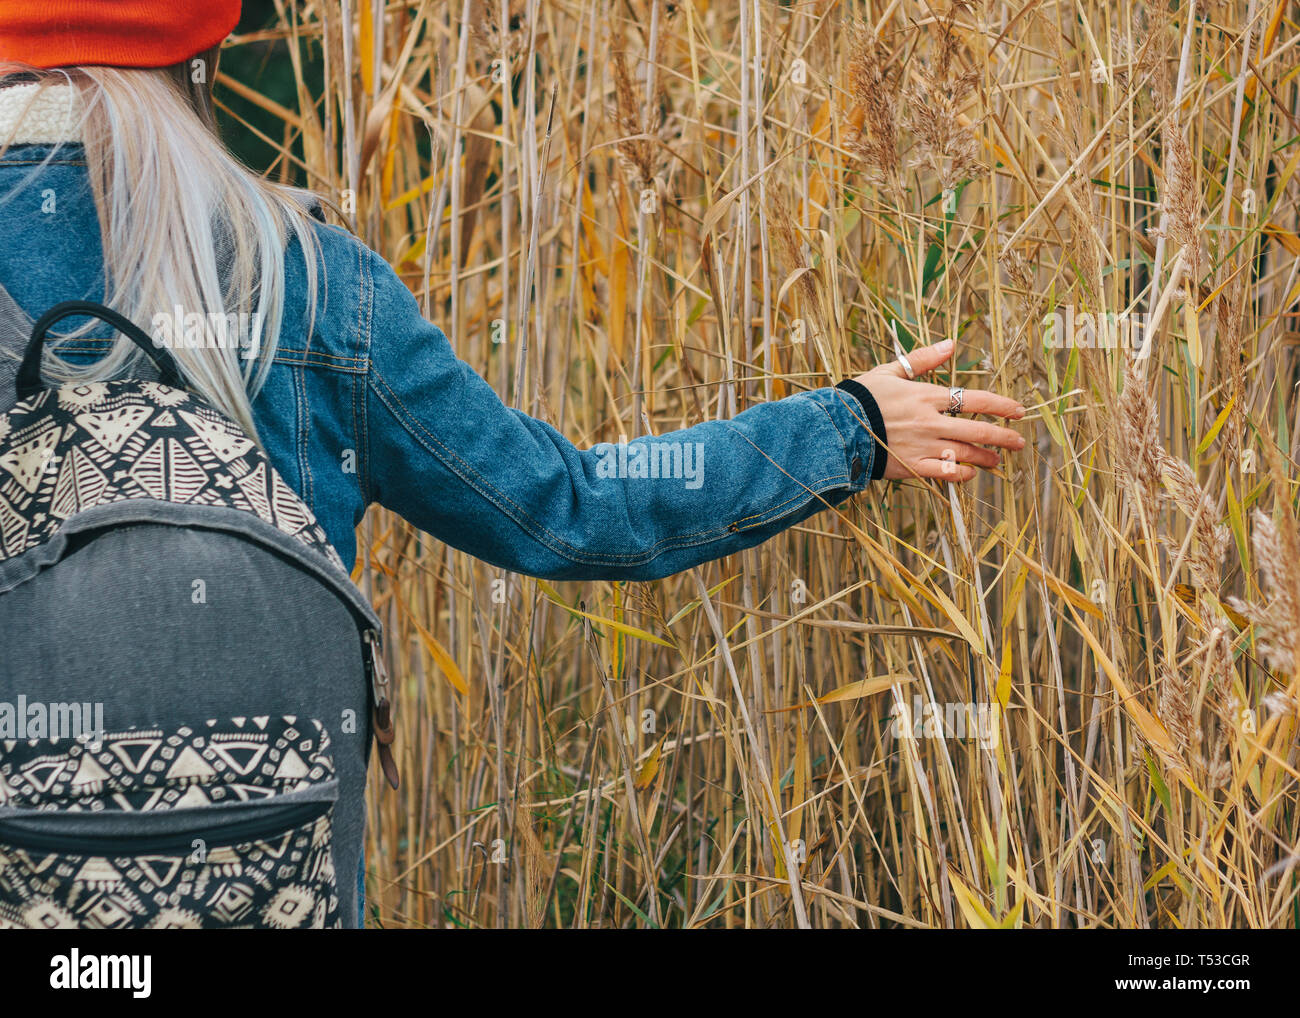 Promenade dans la nature une jeune fille dans un bonnet rouge avec un sac à dos est marcher parmi les hautes herbes sèches à l'automne Banque D'Images